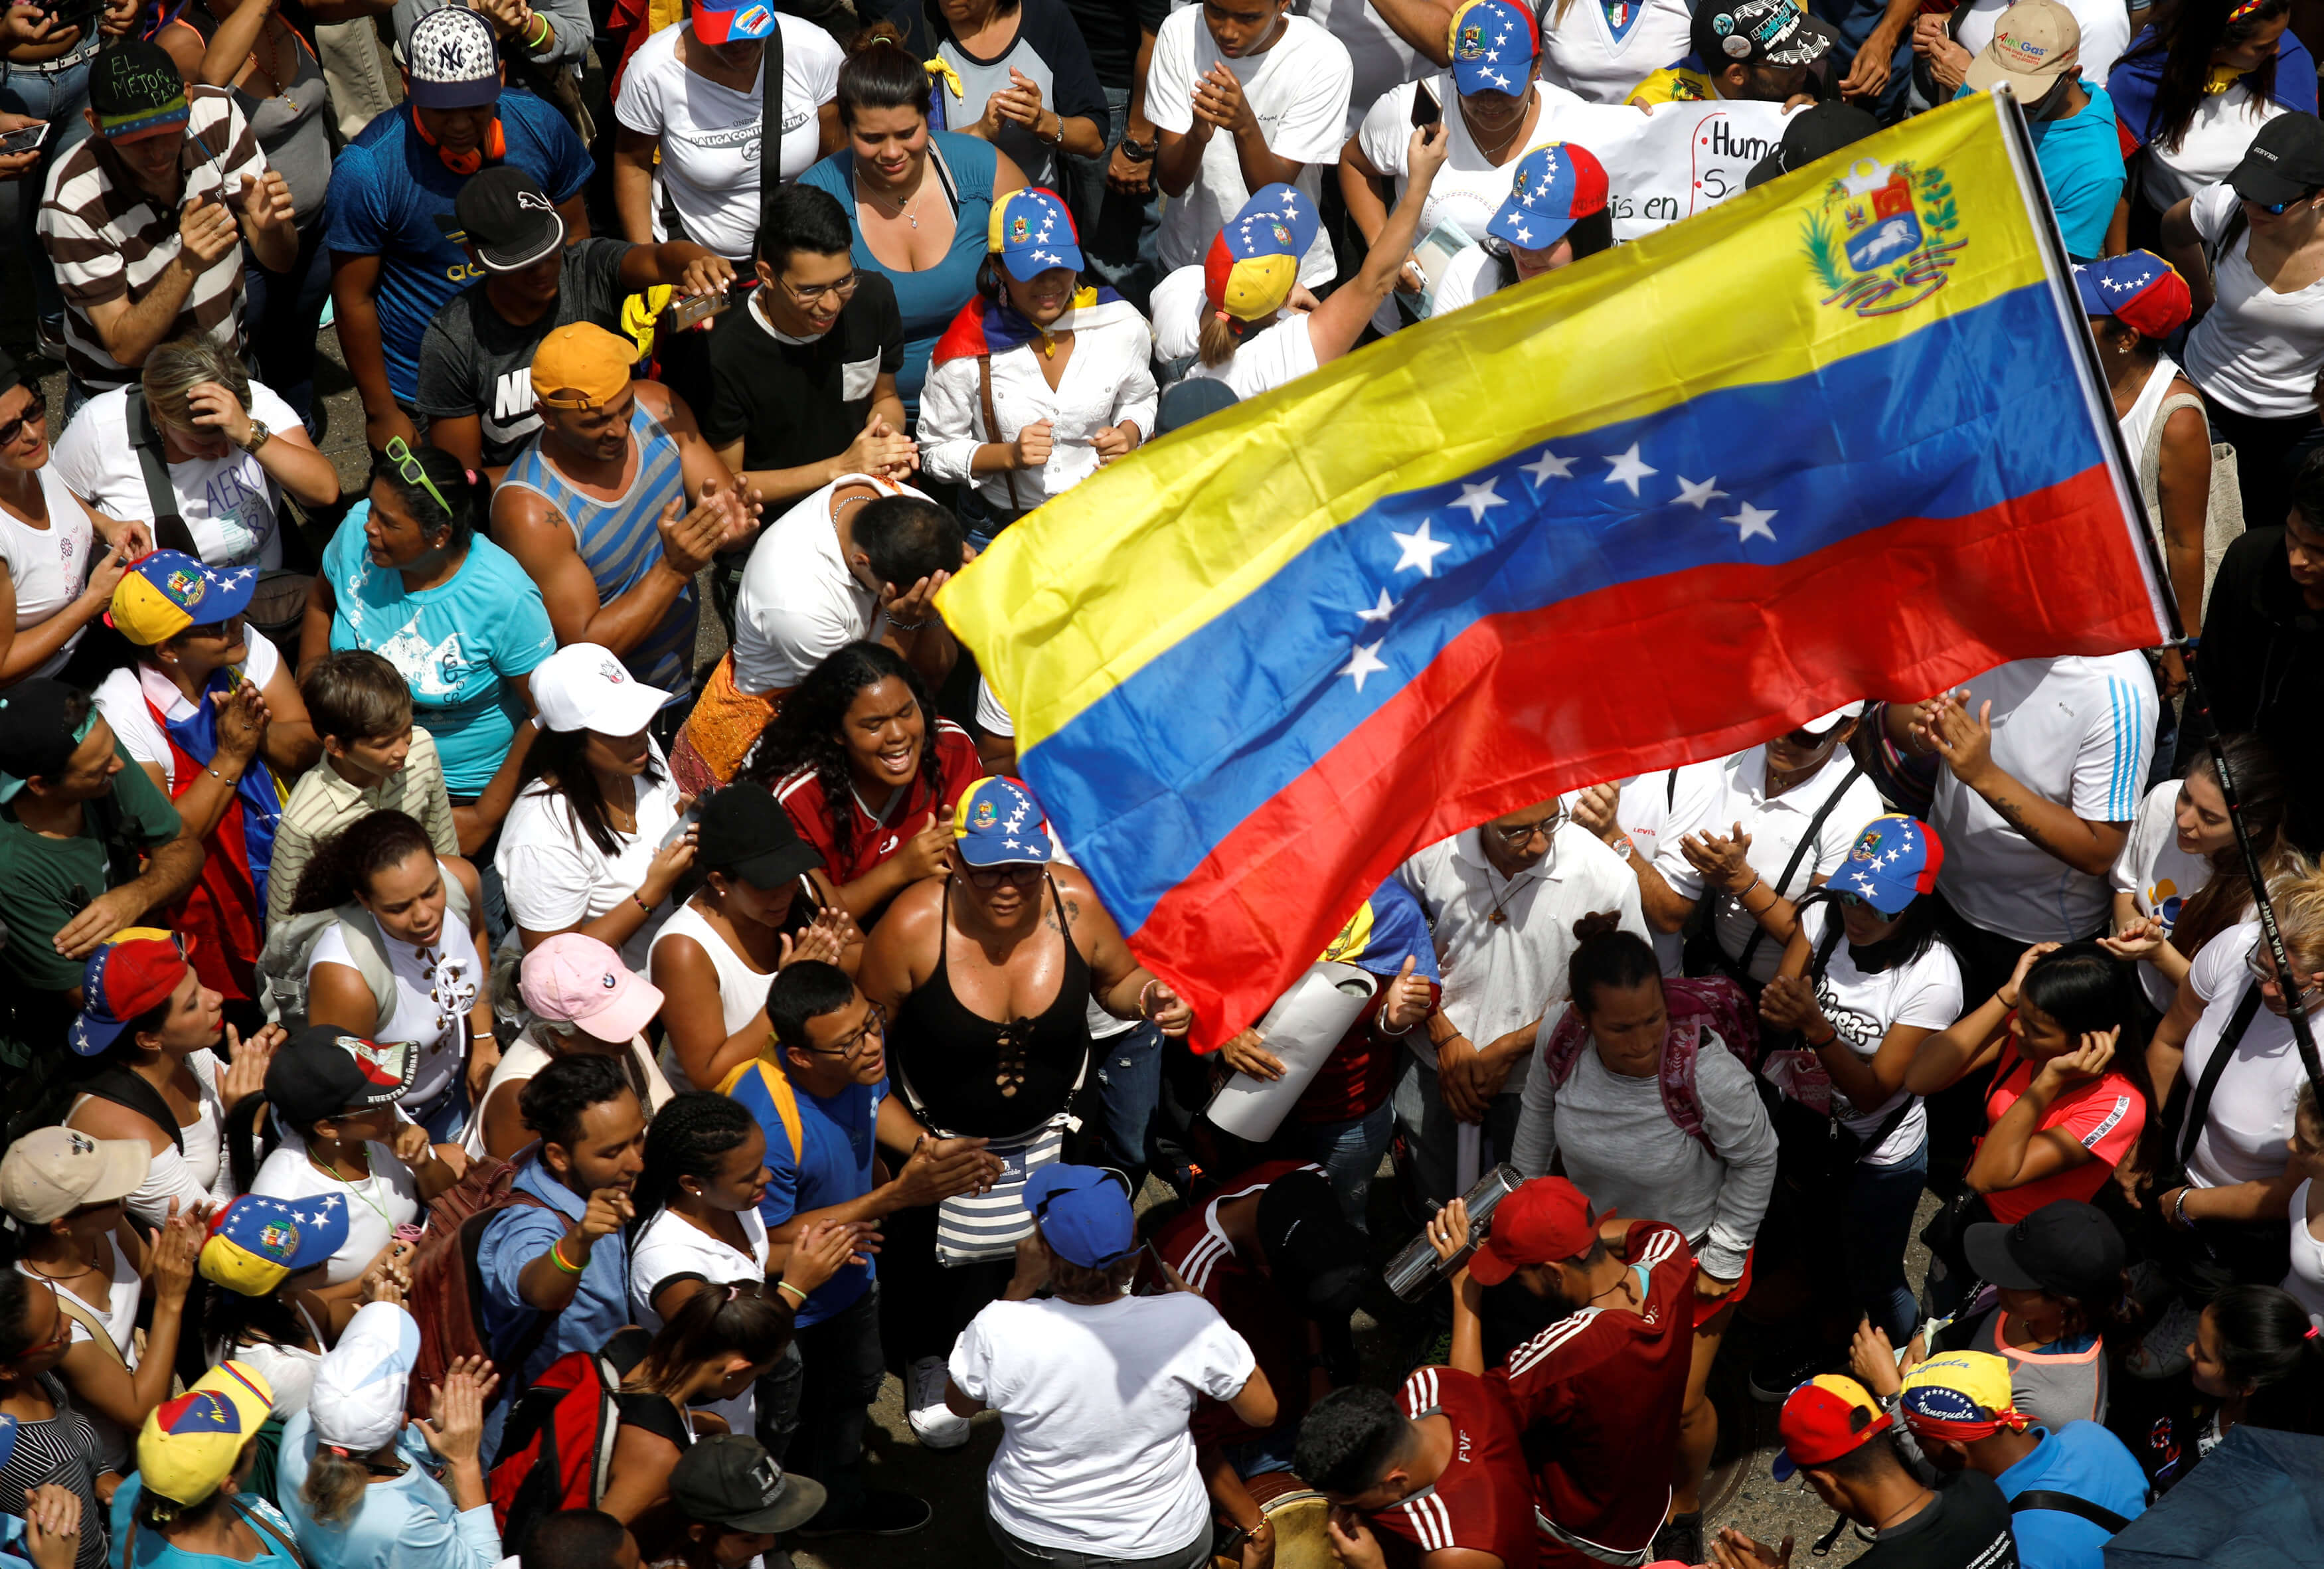 Σταθερά υπέρ ελεύθερων δημοκρατικών εκλογών στη Βενεζουέλα η ΕΕ